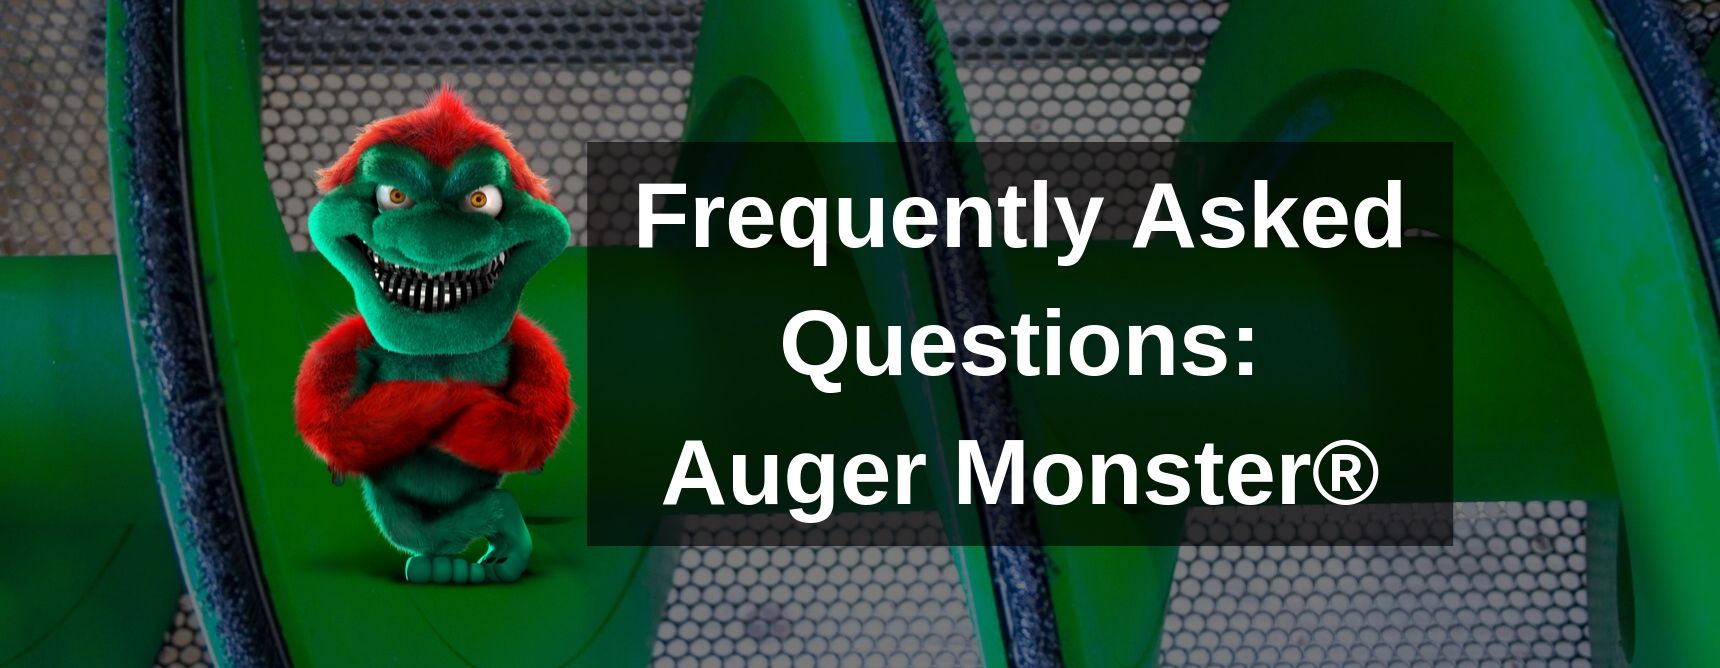 Auger Monster FAQ